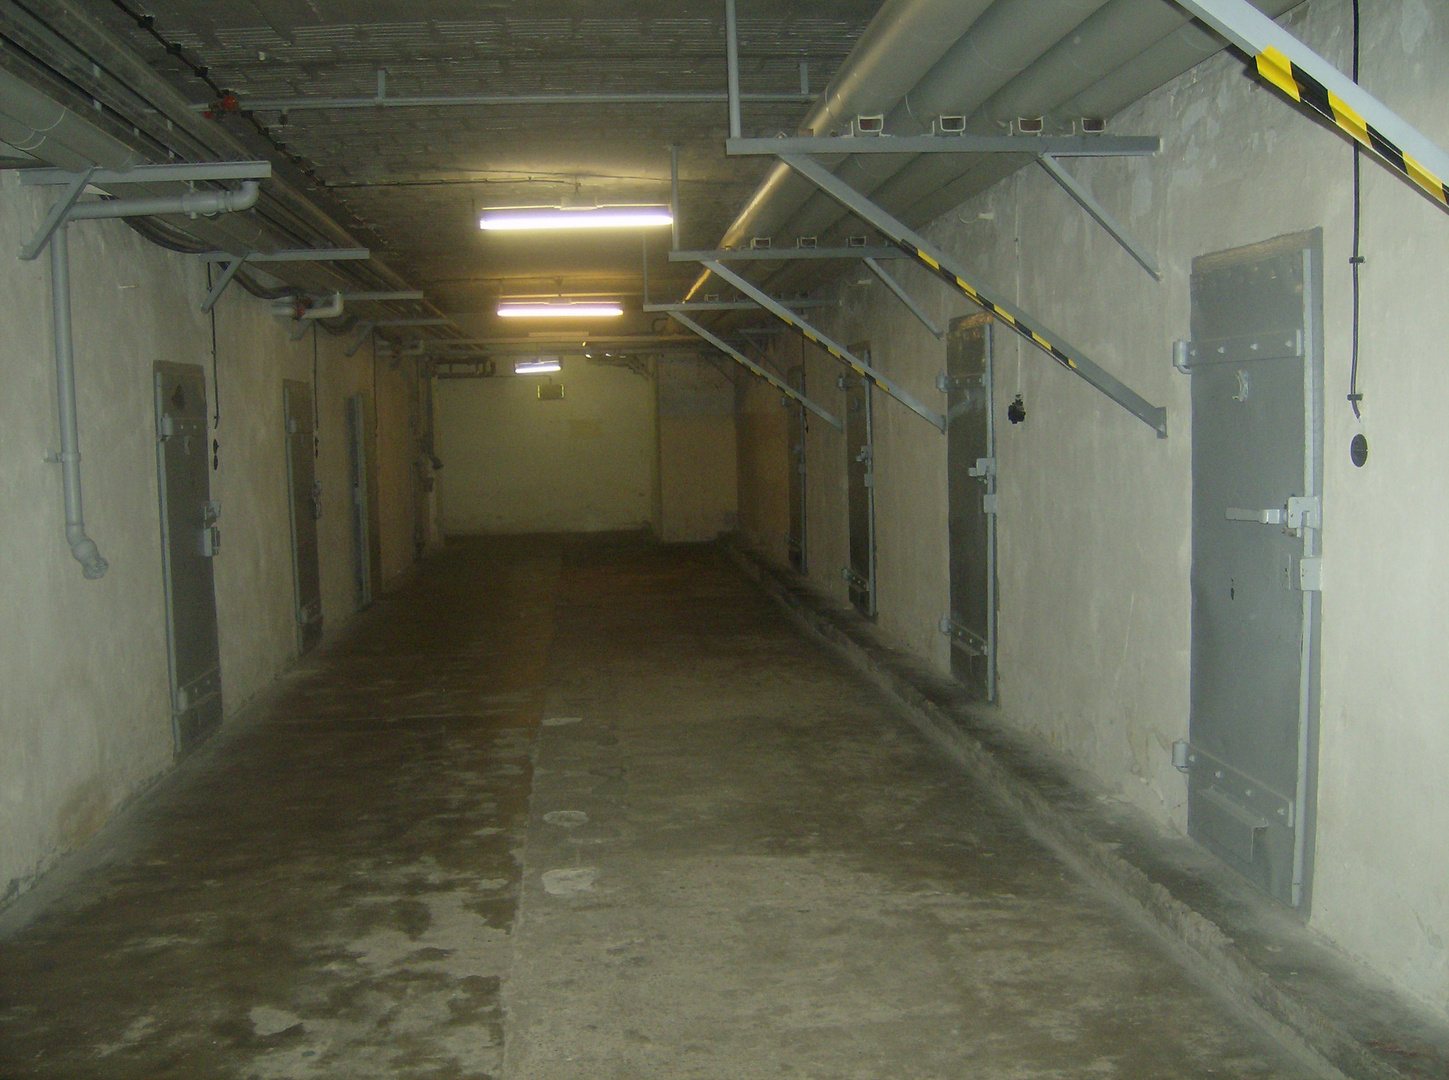 Das ehemalige Stasi- Gefängnis Hohenschönhausen